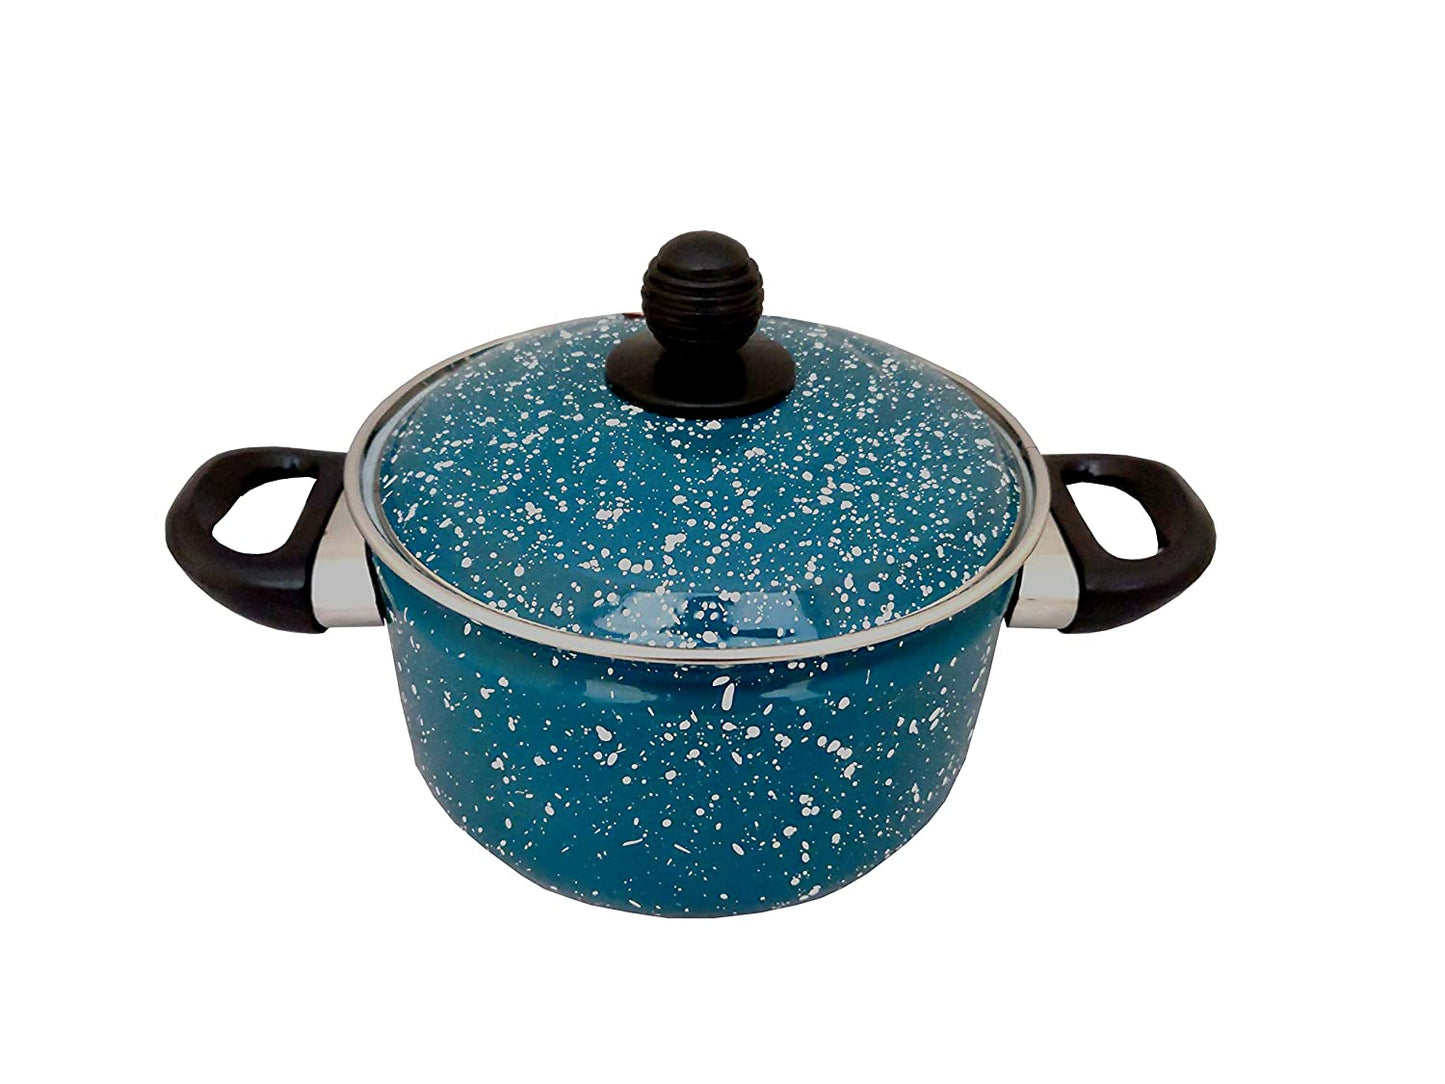 Cook and Serve Carbon Steel Enamel Pot 1.2Ltr (Aqua Blue)